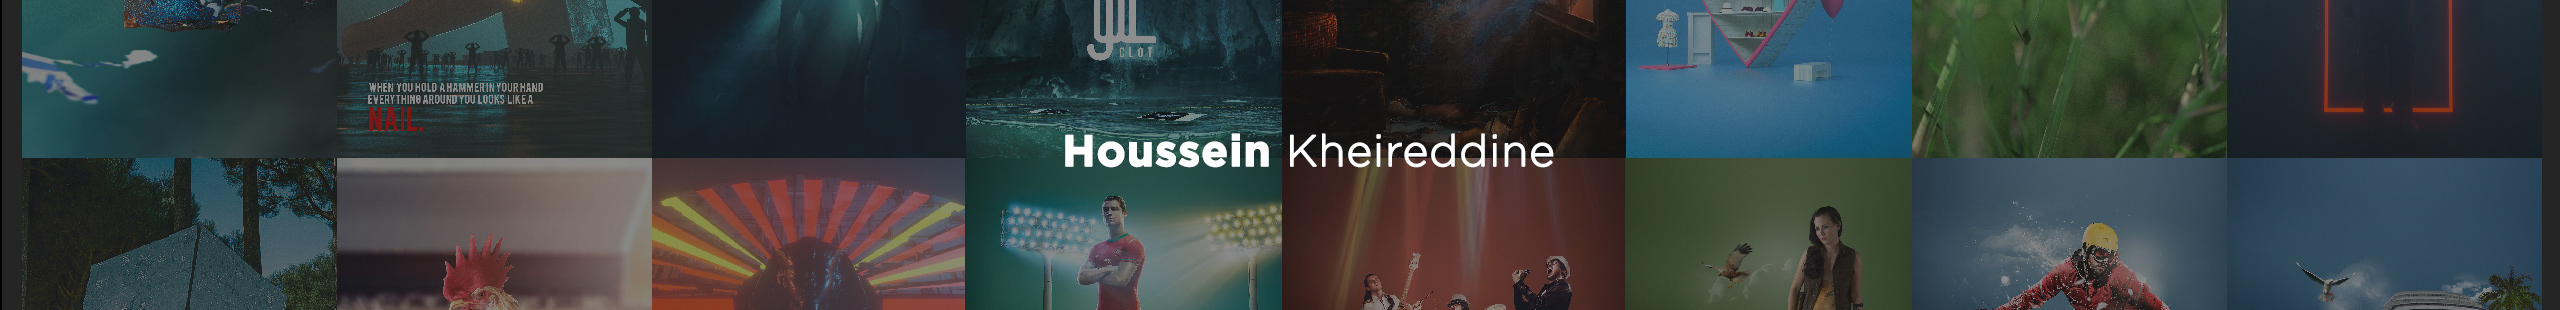 Hussein Kheireddeen profil başlığı